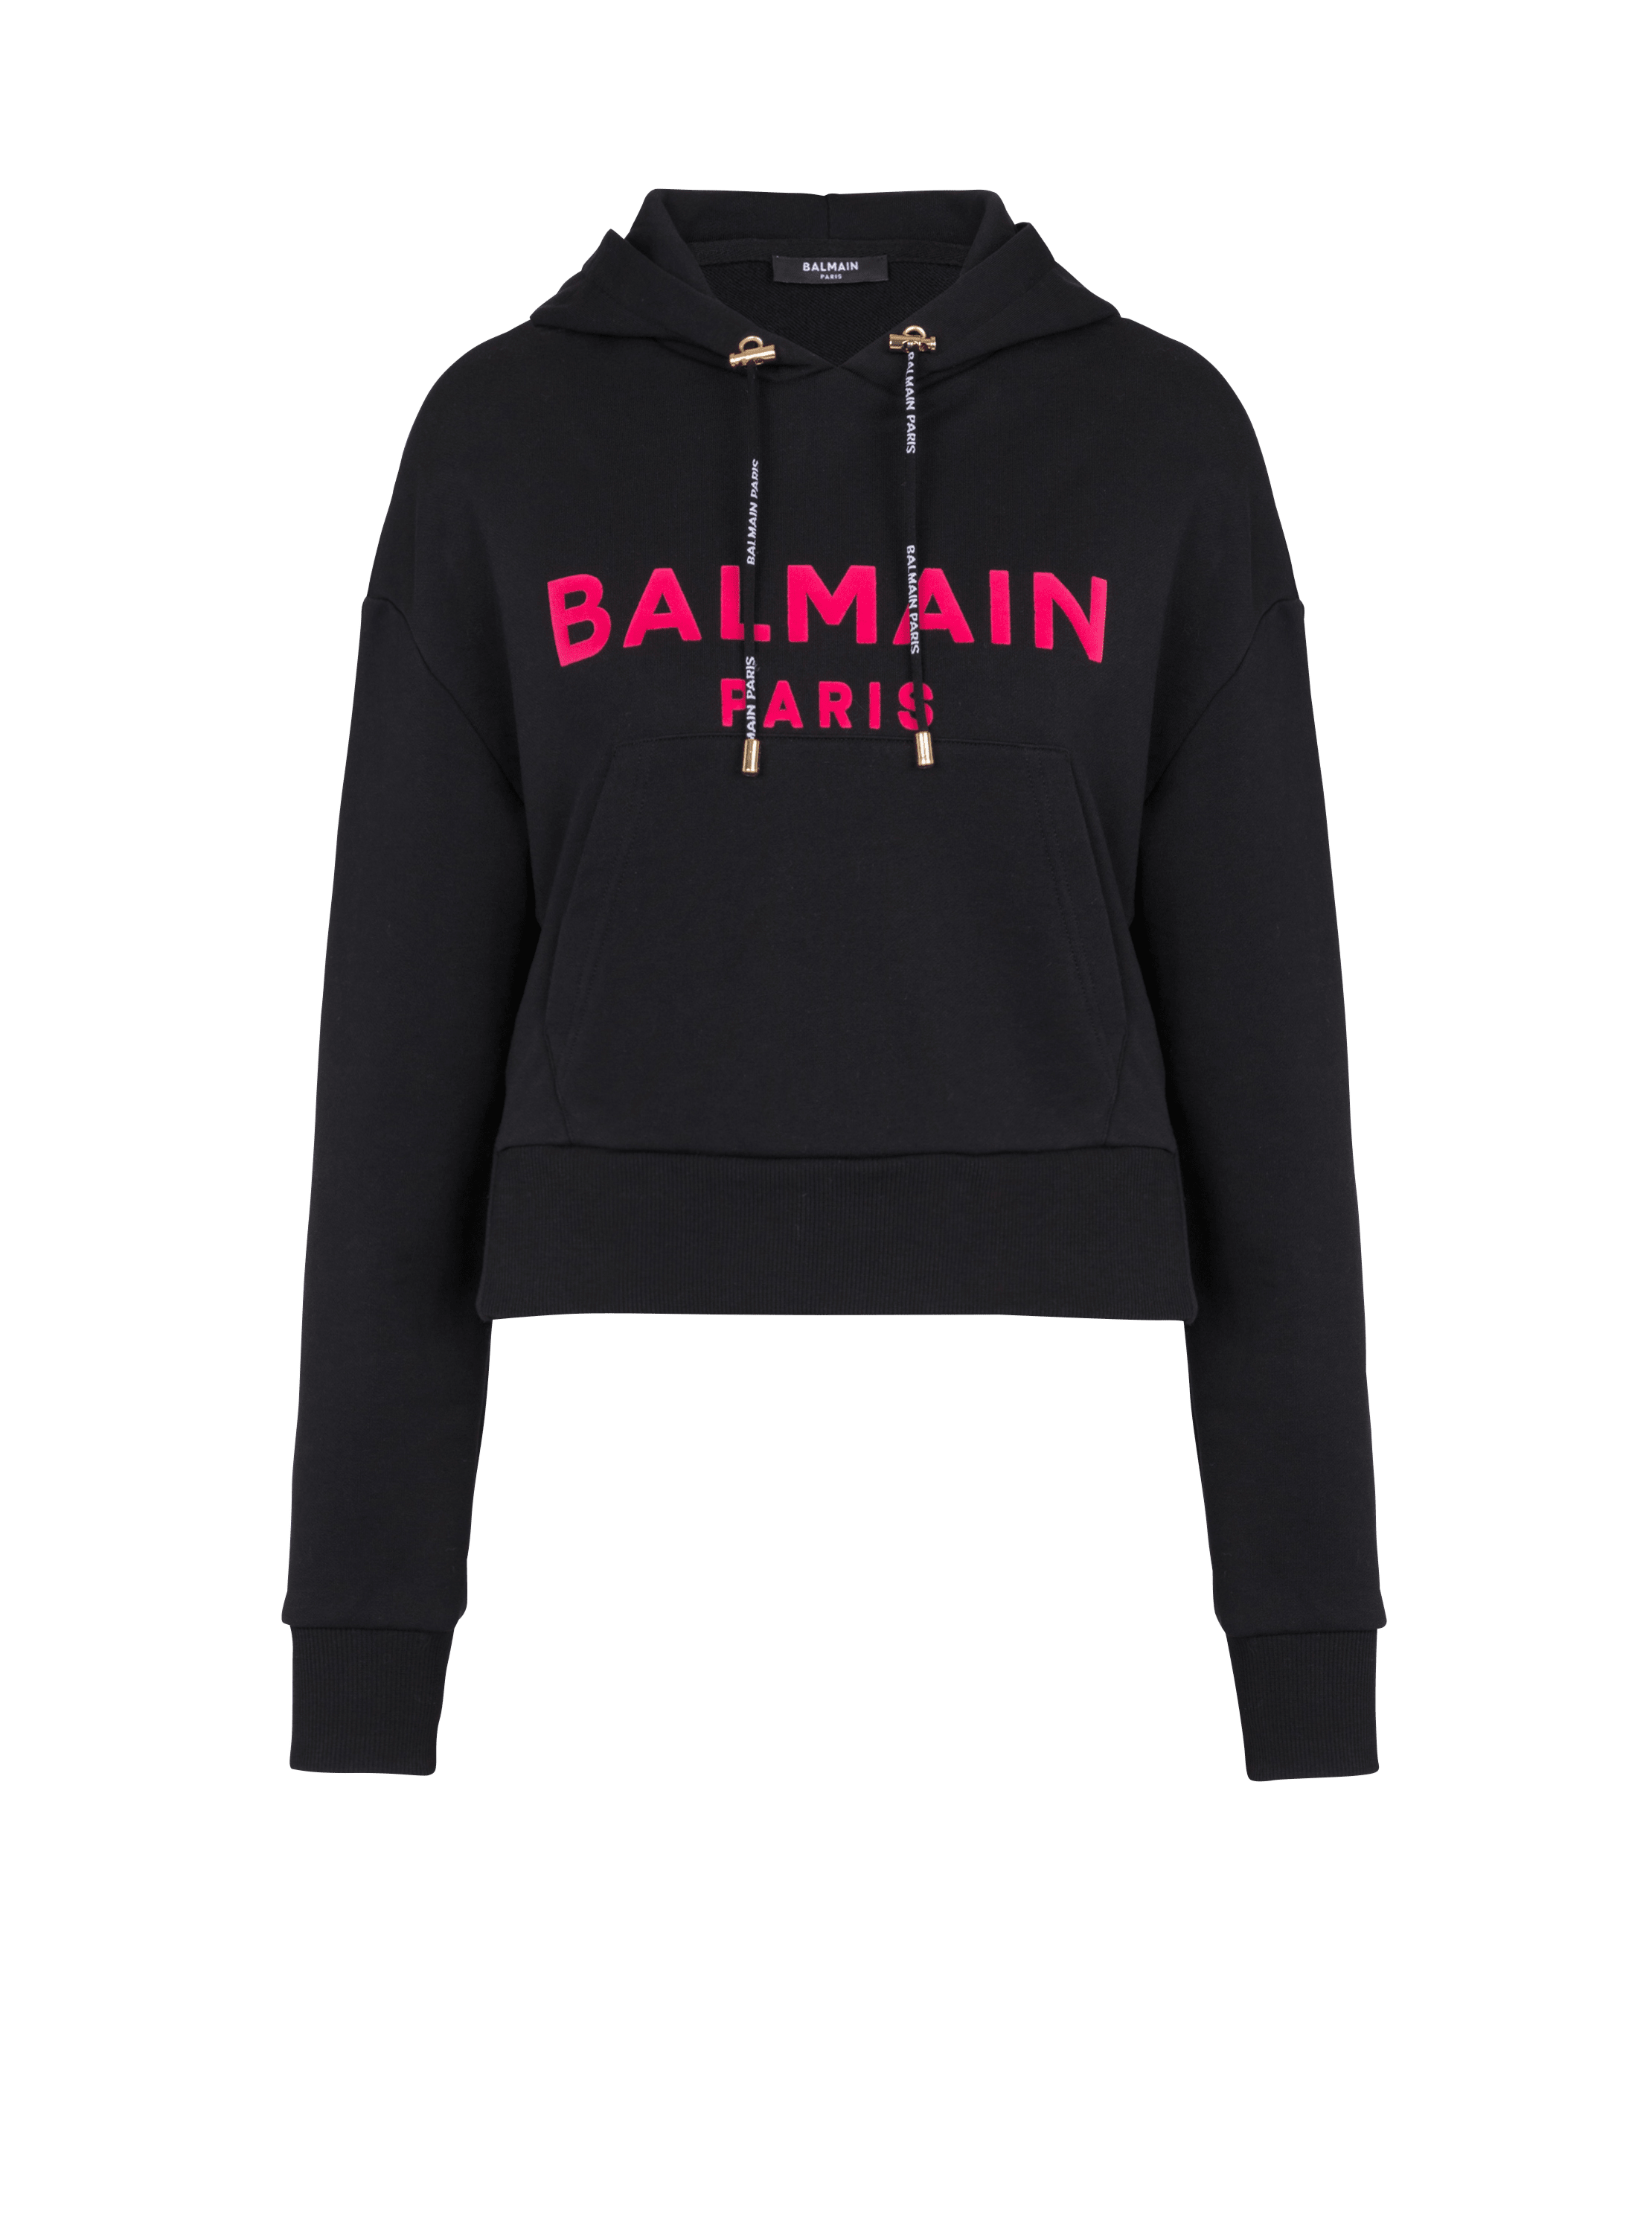 Sweatshirt aus Baumwolle mit aufgedrucktem Balmain-Logo, schwarz, hi-res